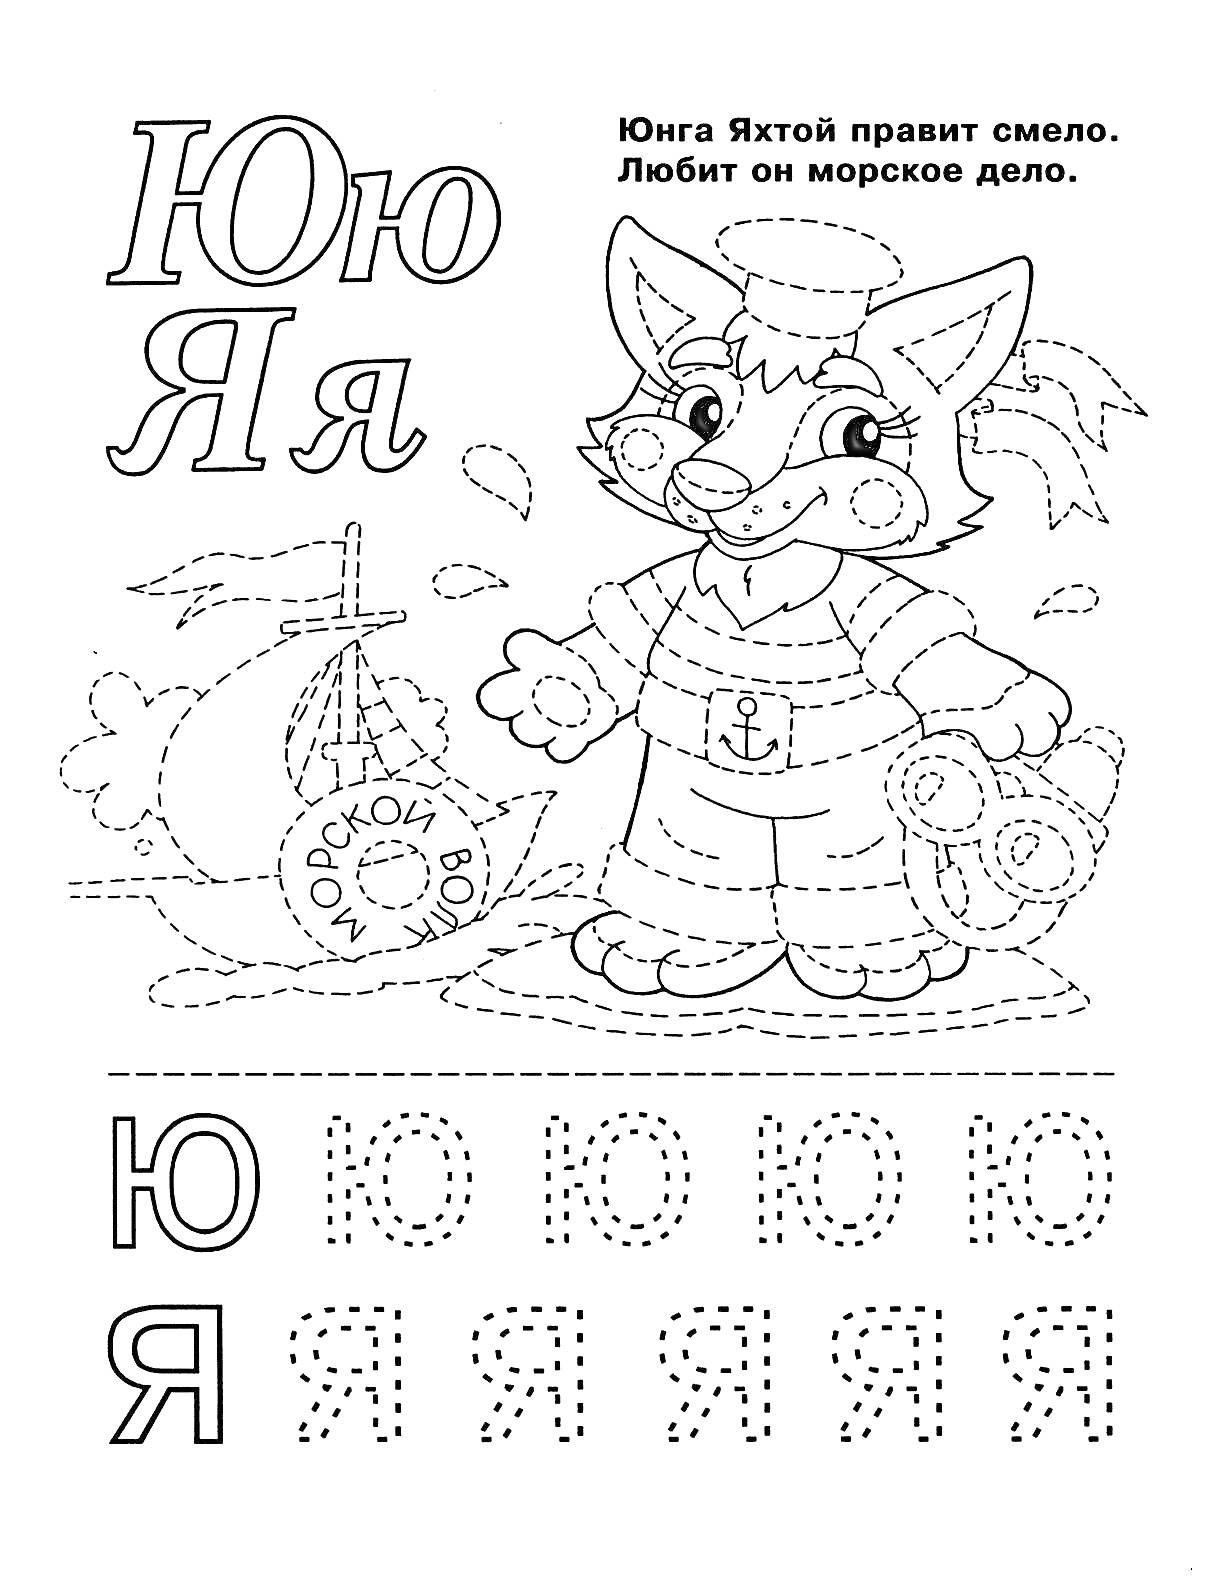 Раскраска Кошка-юнга на корабле с буквами Ю и Я для обведения и тренировки письма